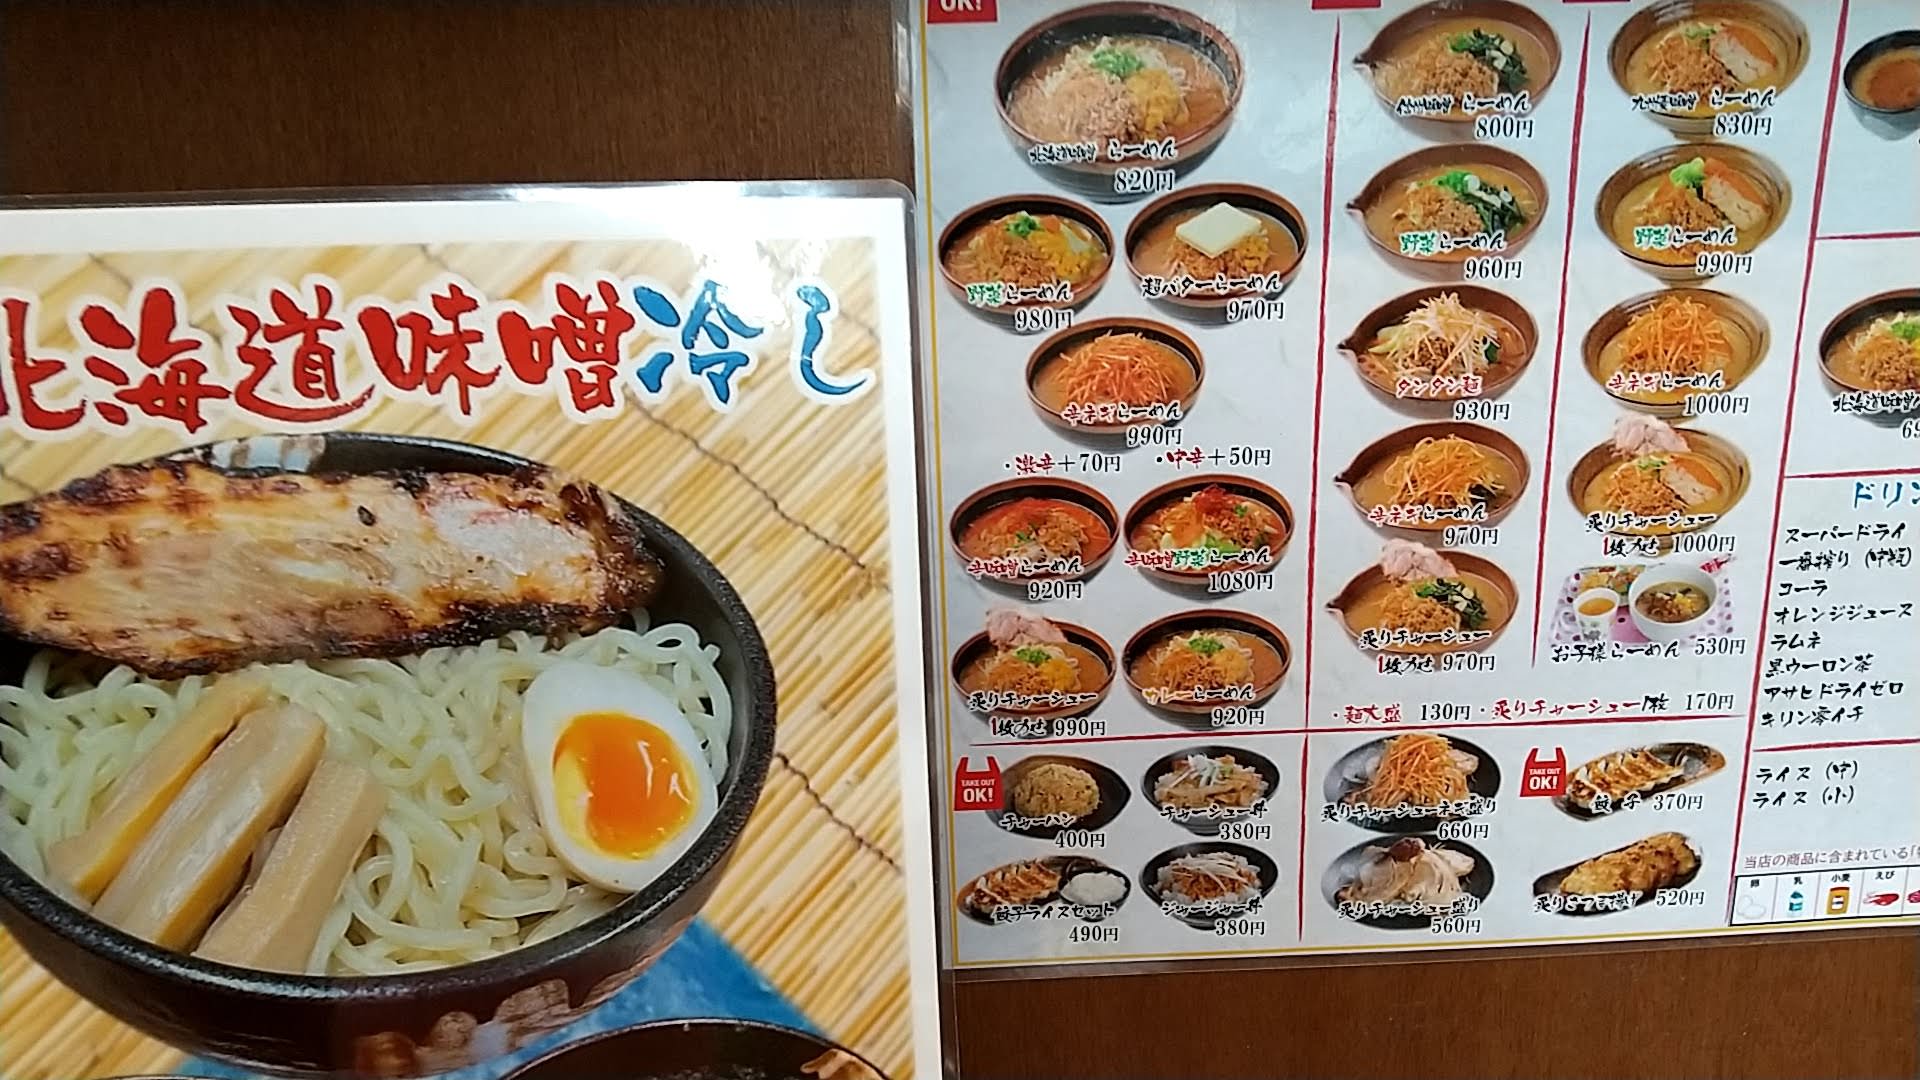 蔵出し味噌 麺場 喜久屋 蘇我店　メニュー